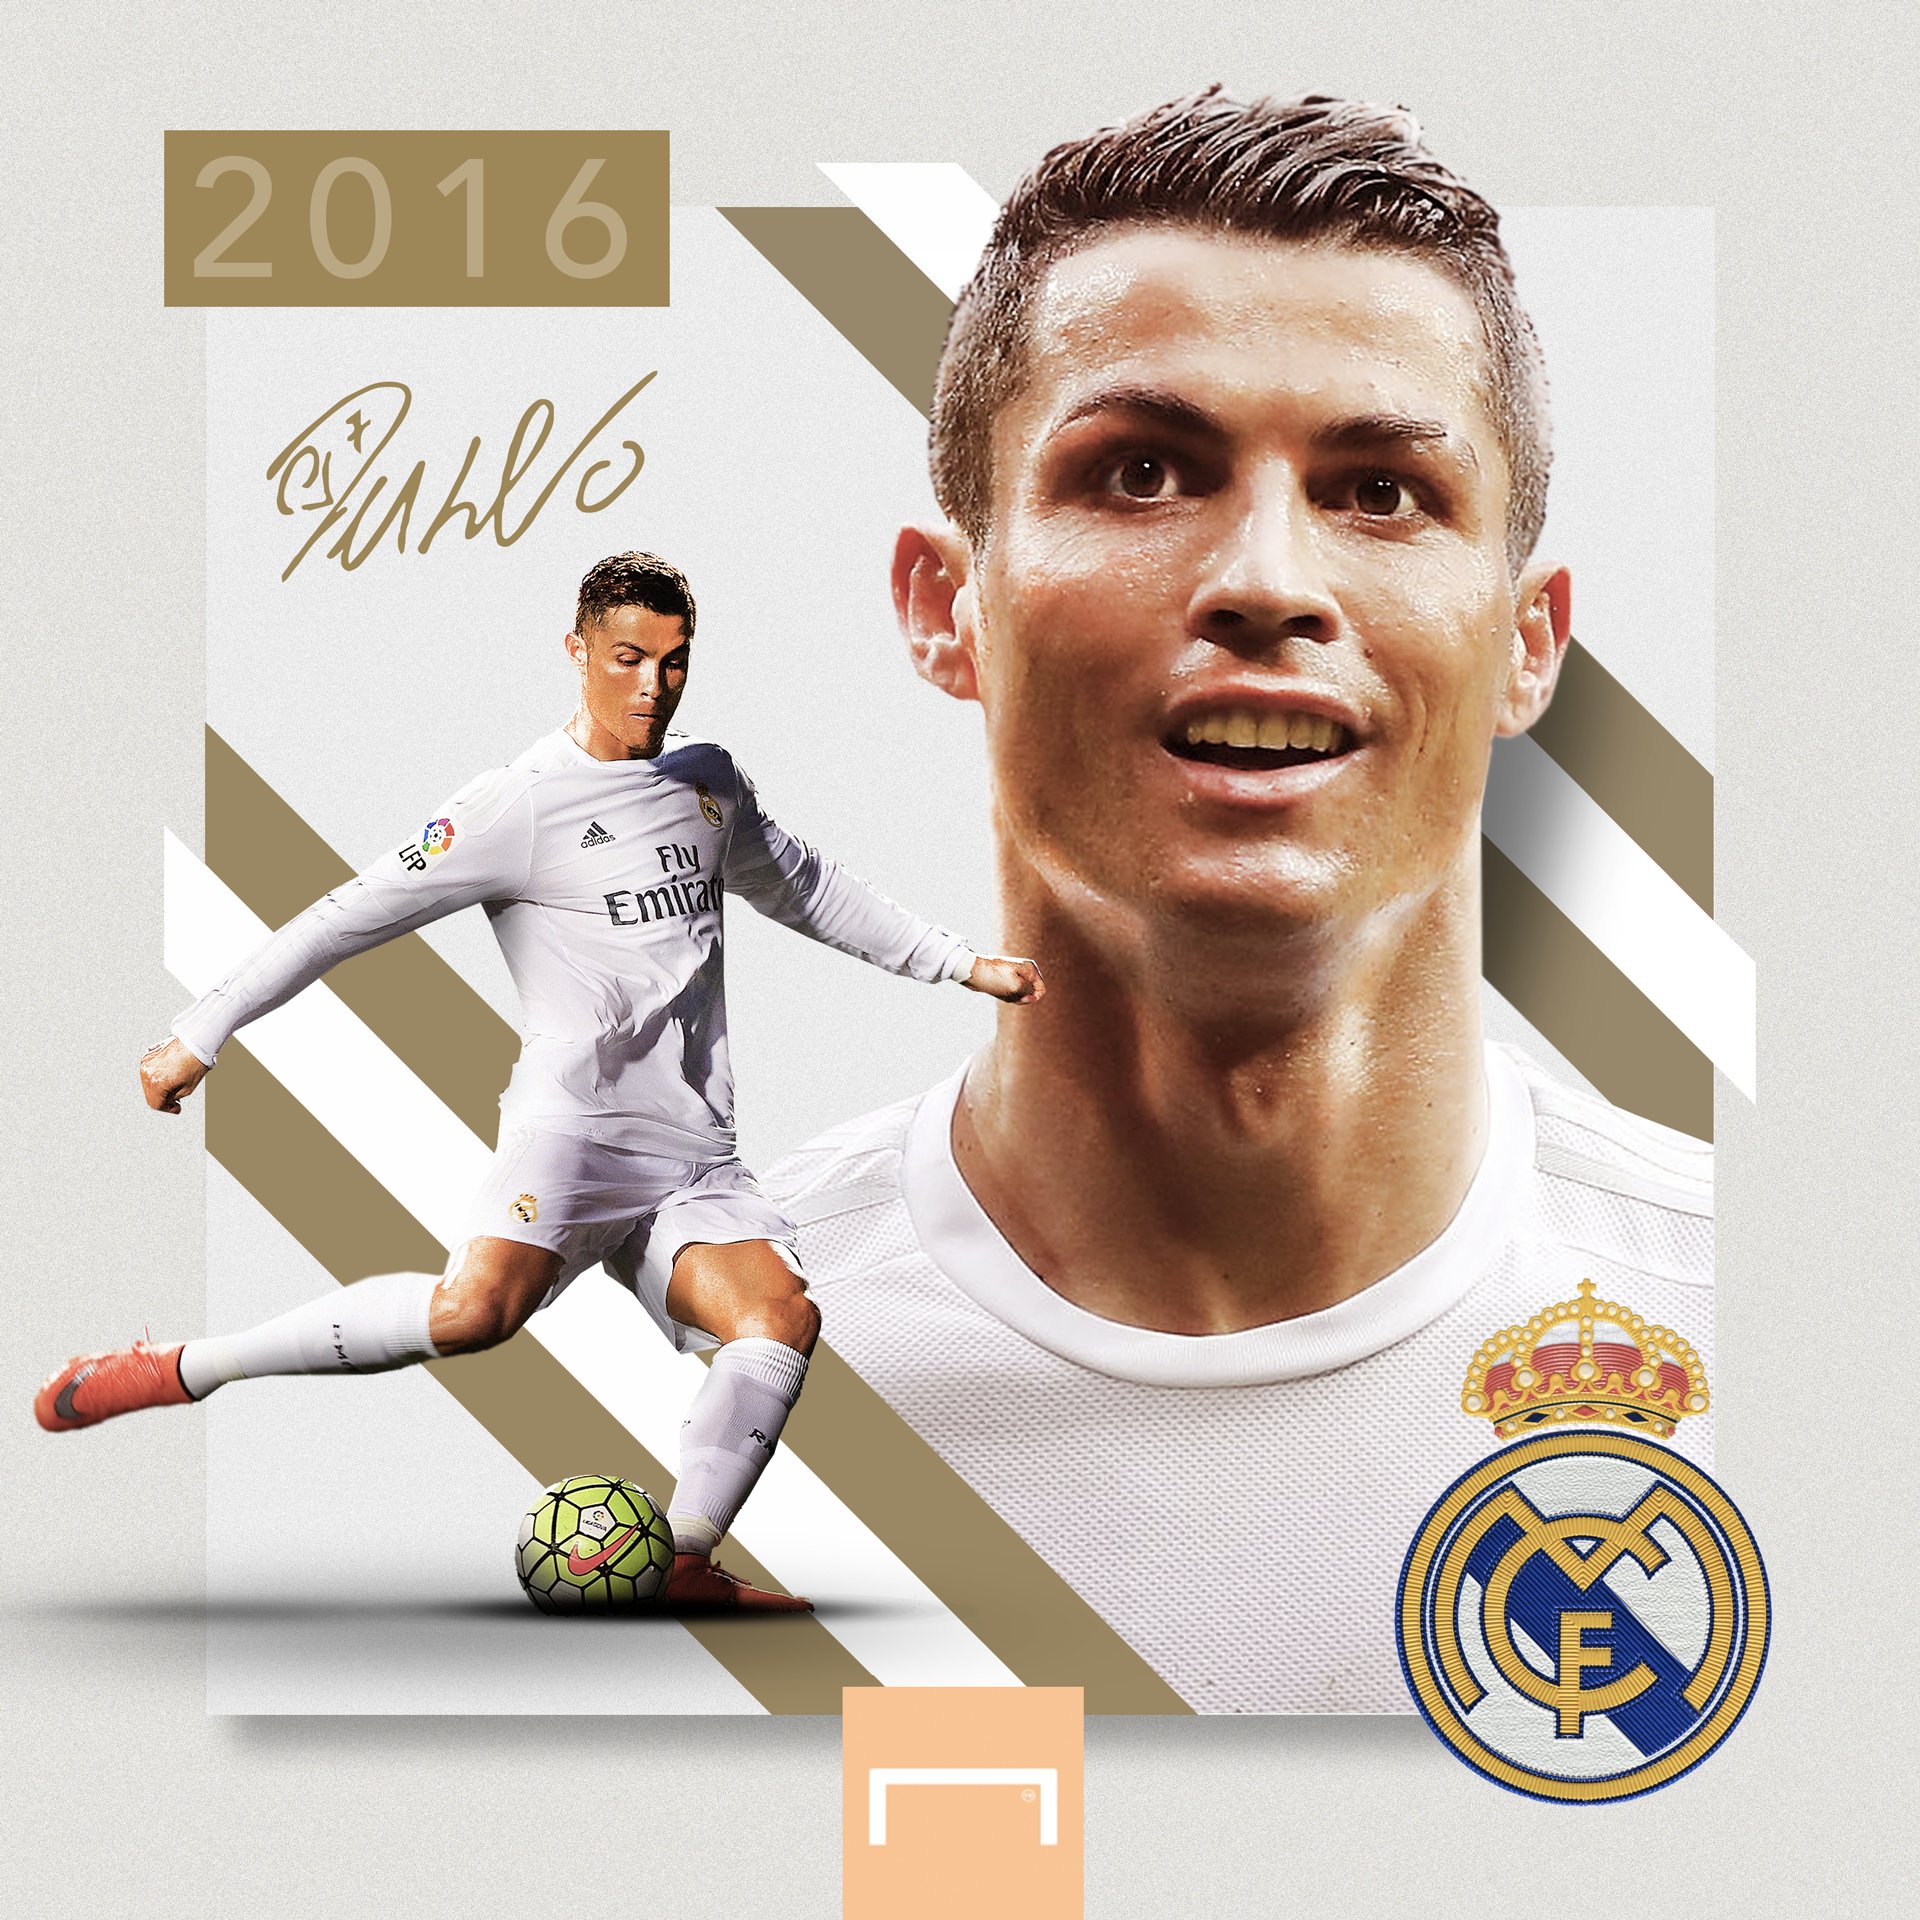 Cristiano Ronaldo Fifa 2018 Portrait Wallpapers